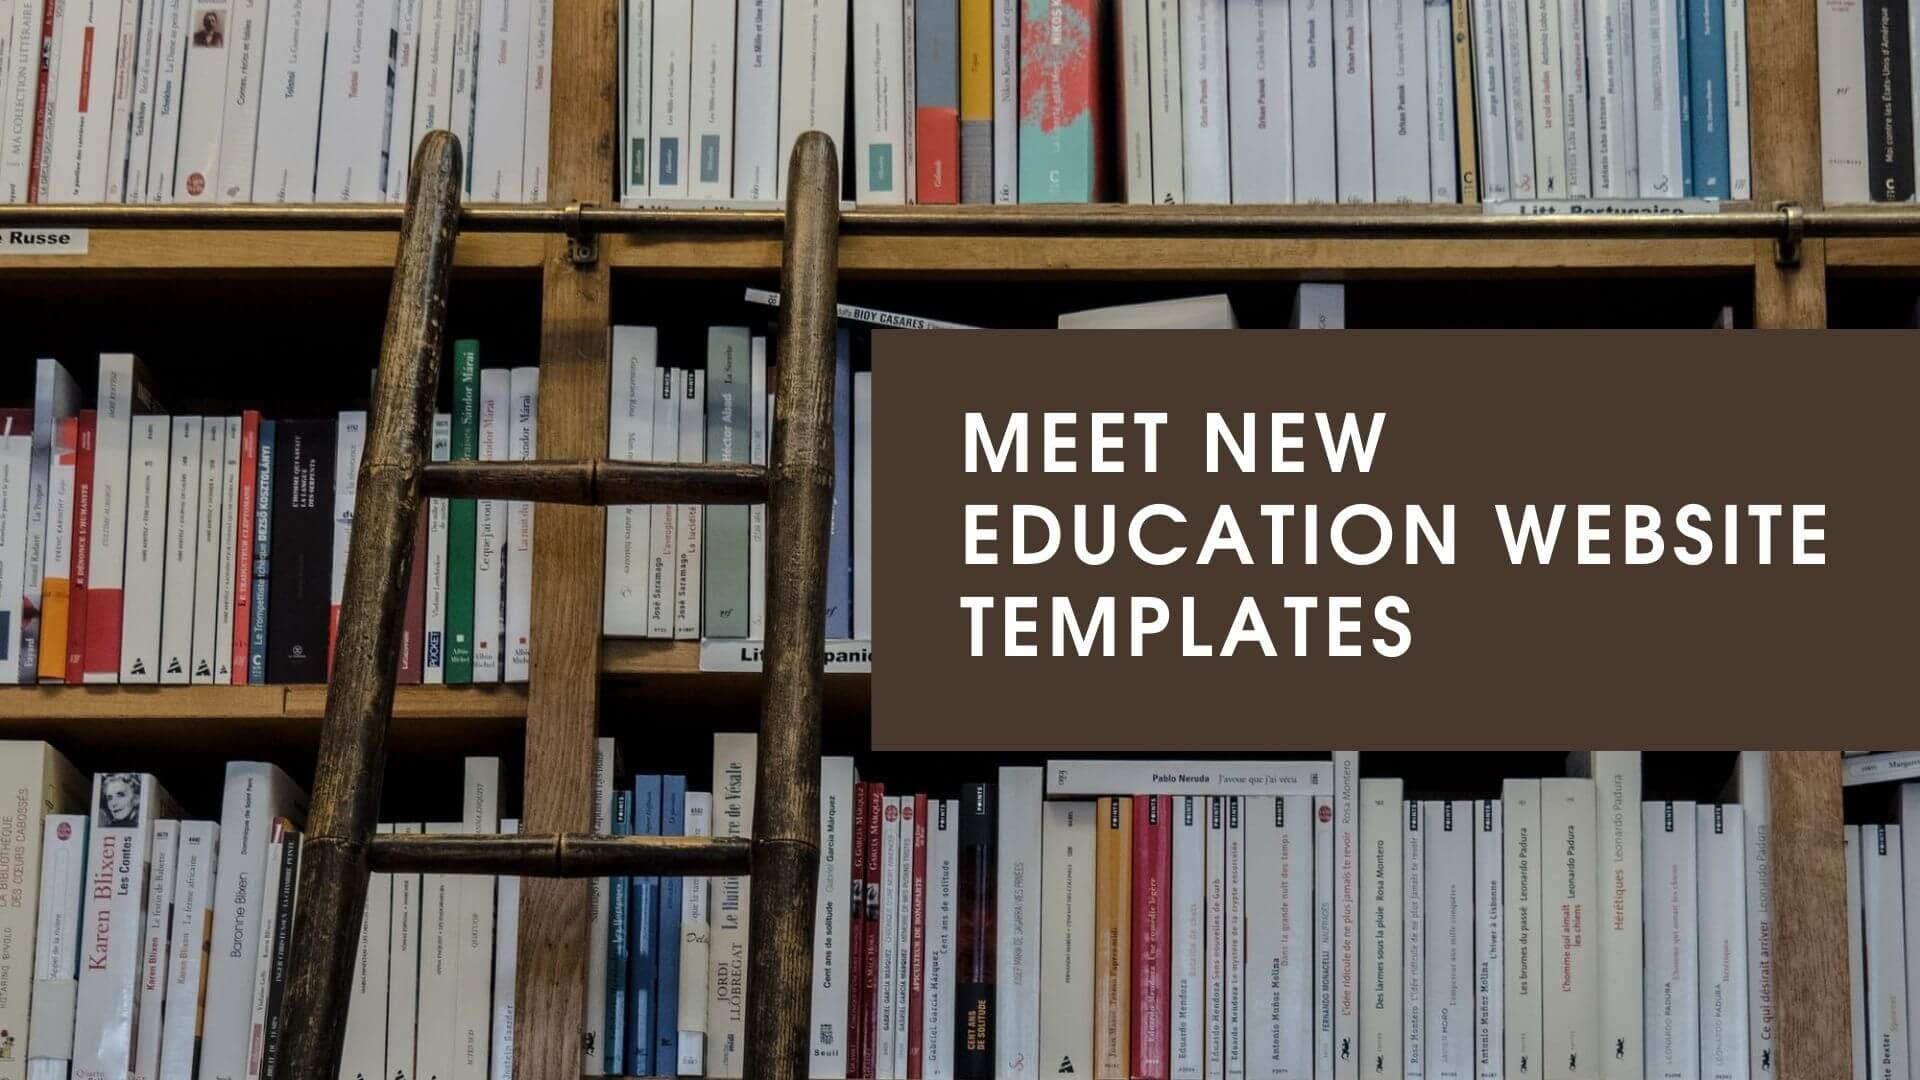 Joomla News: Education Website Templates